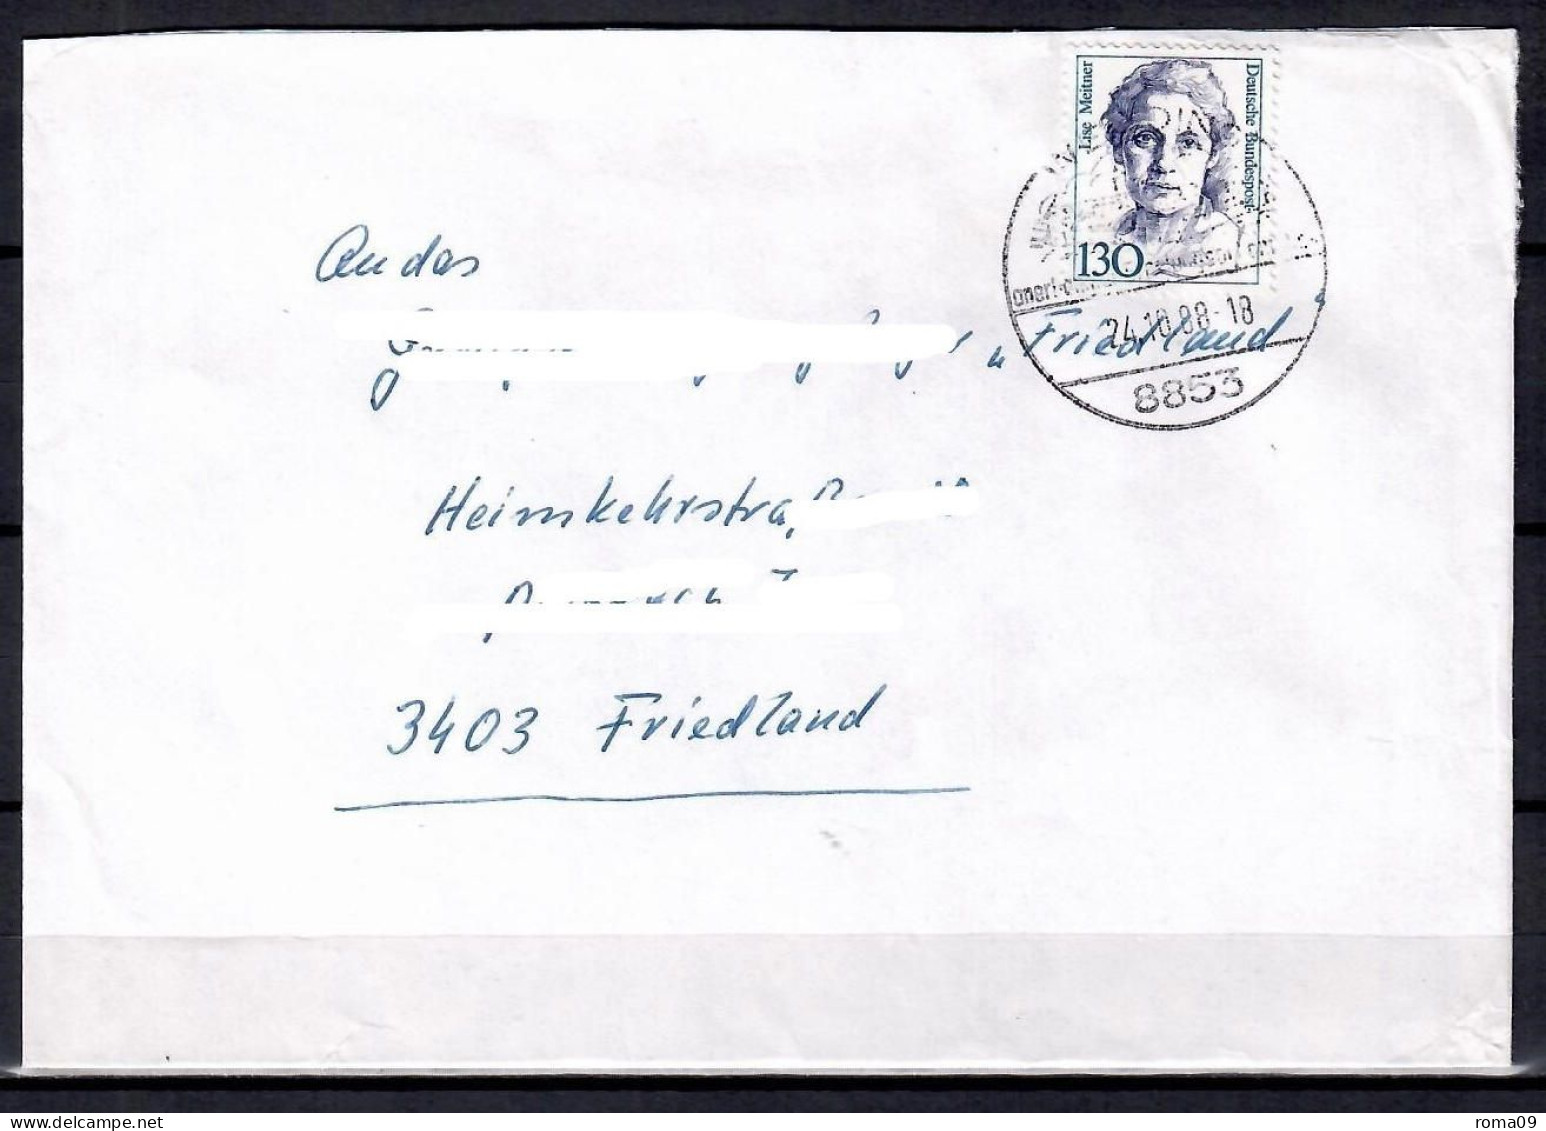 MiNr. 1366; Frauen: Lise Meitner, Auf Portoger. Brief Von Wemding Nach Friedland; B-1399 - Covers & Documents